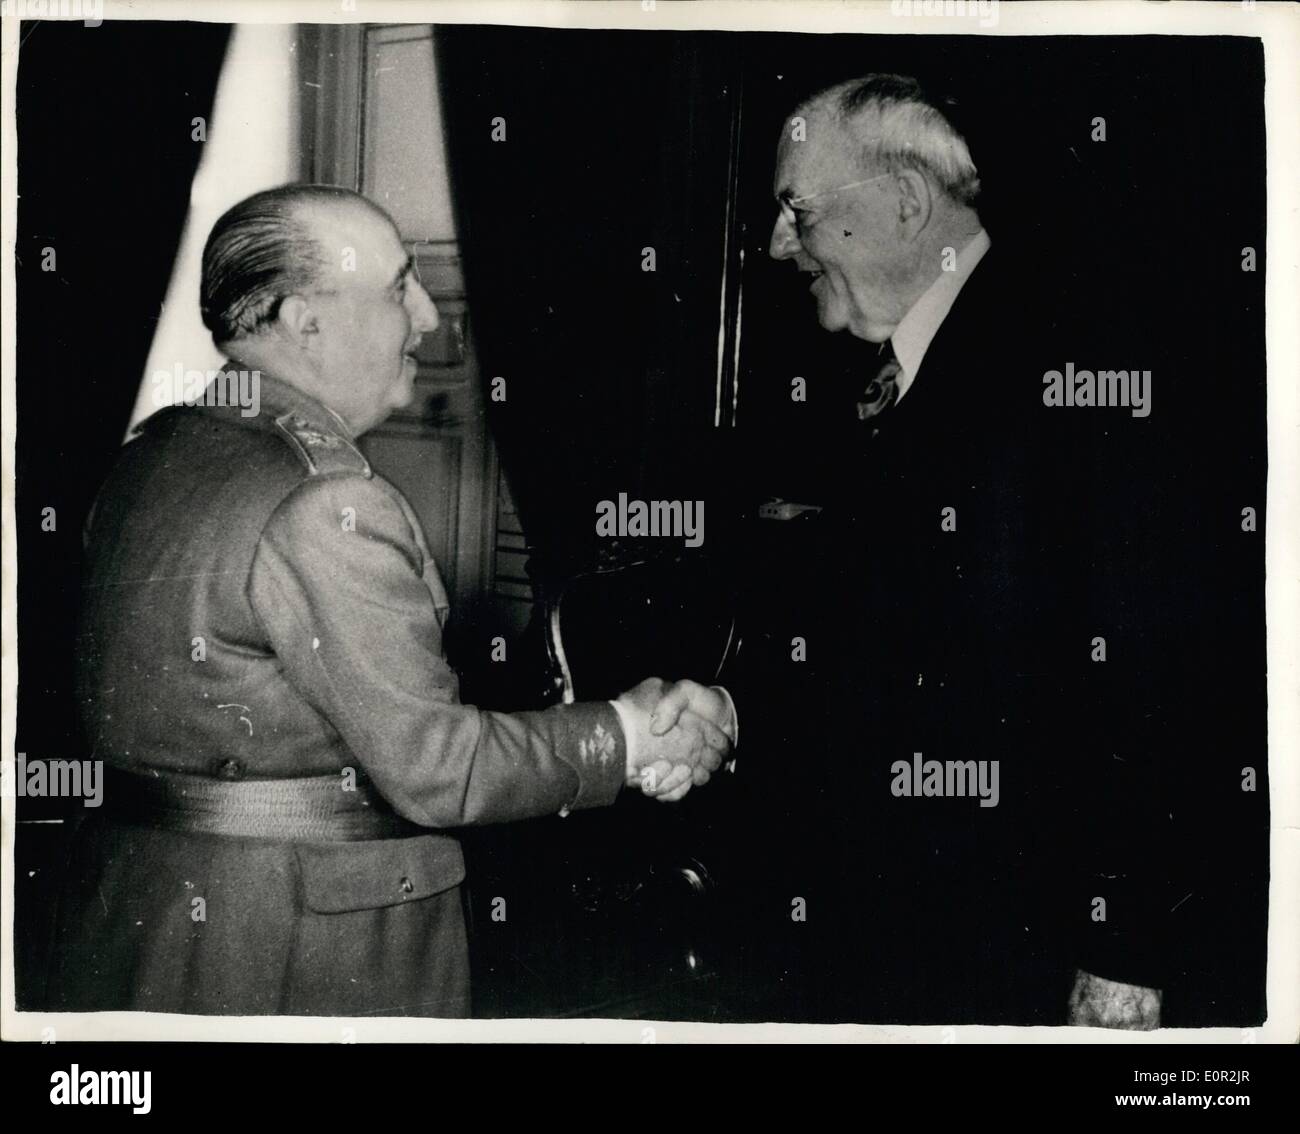 Diciembre 12, 1957 - El Sr. DULLES VE EL GENERAL FRANCO EN MADRID. El Sr. John Foster Dulles, el Secretario de Estado de los Estados Unidos llegó a Madrid el viernes de la reunión de la OTAN en París. Antes de salir de Washington, el Sr. Dulles vio el GENERAL FRANCO, en el Pardo Palacio. Foto: El Sr. John Foster Dulles sacude la mano con el general Franco, cuando se reunieron en Madrid el viernes. Foto de stock